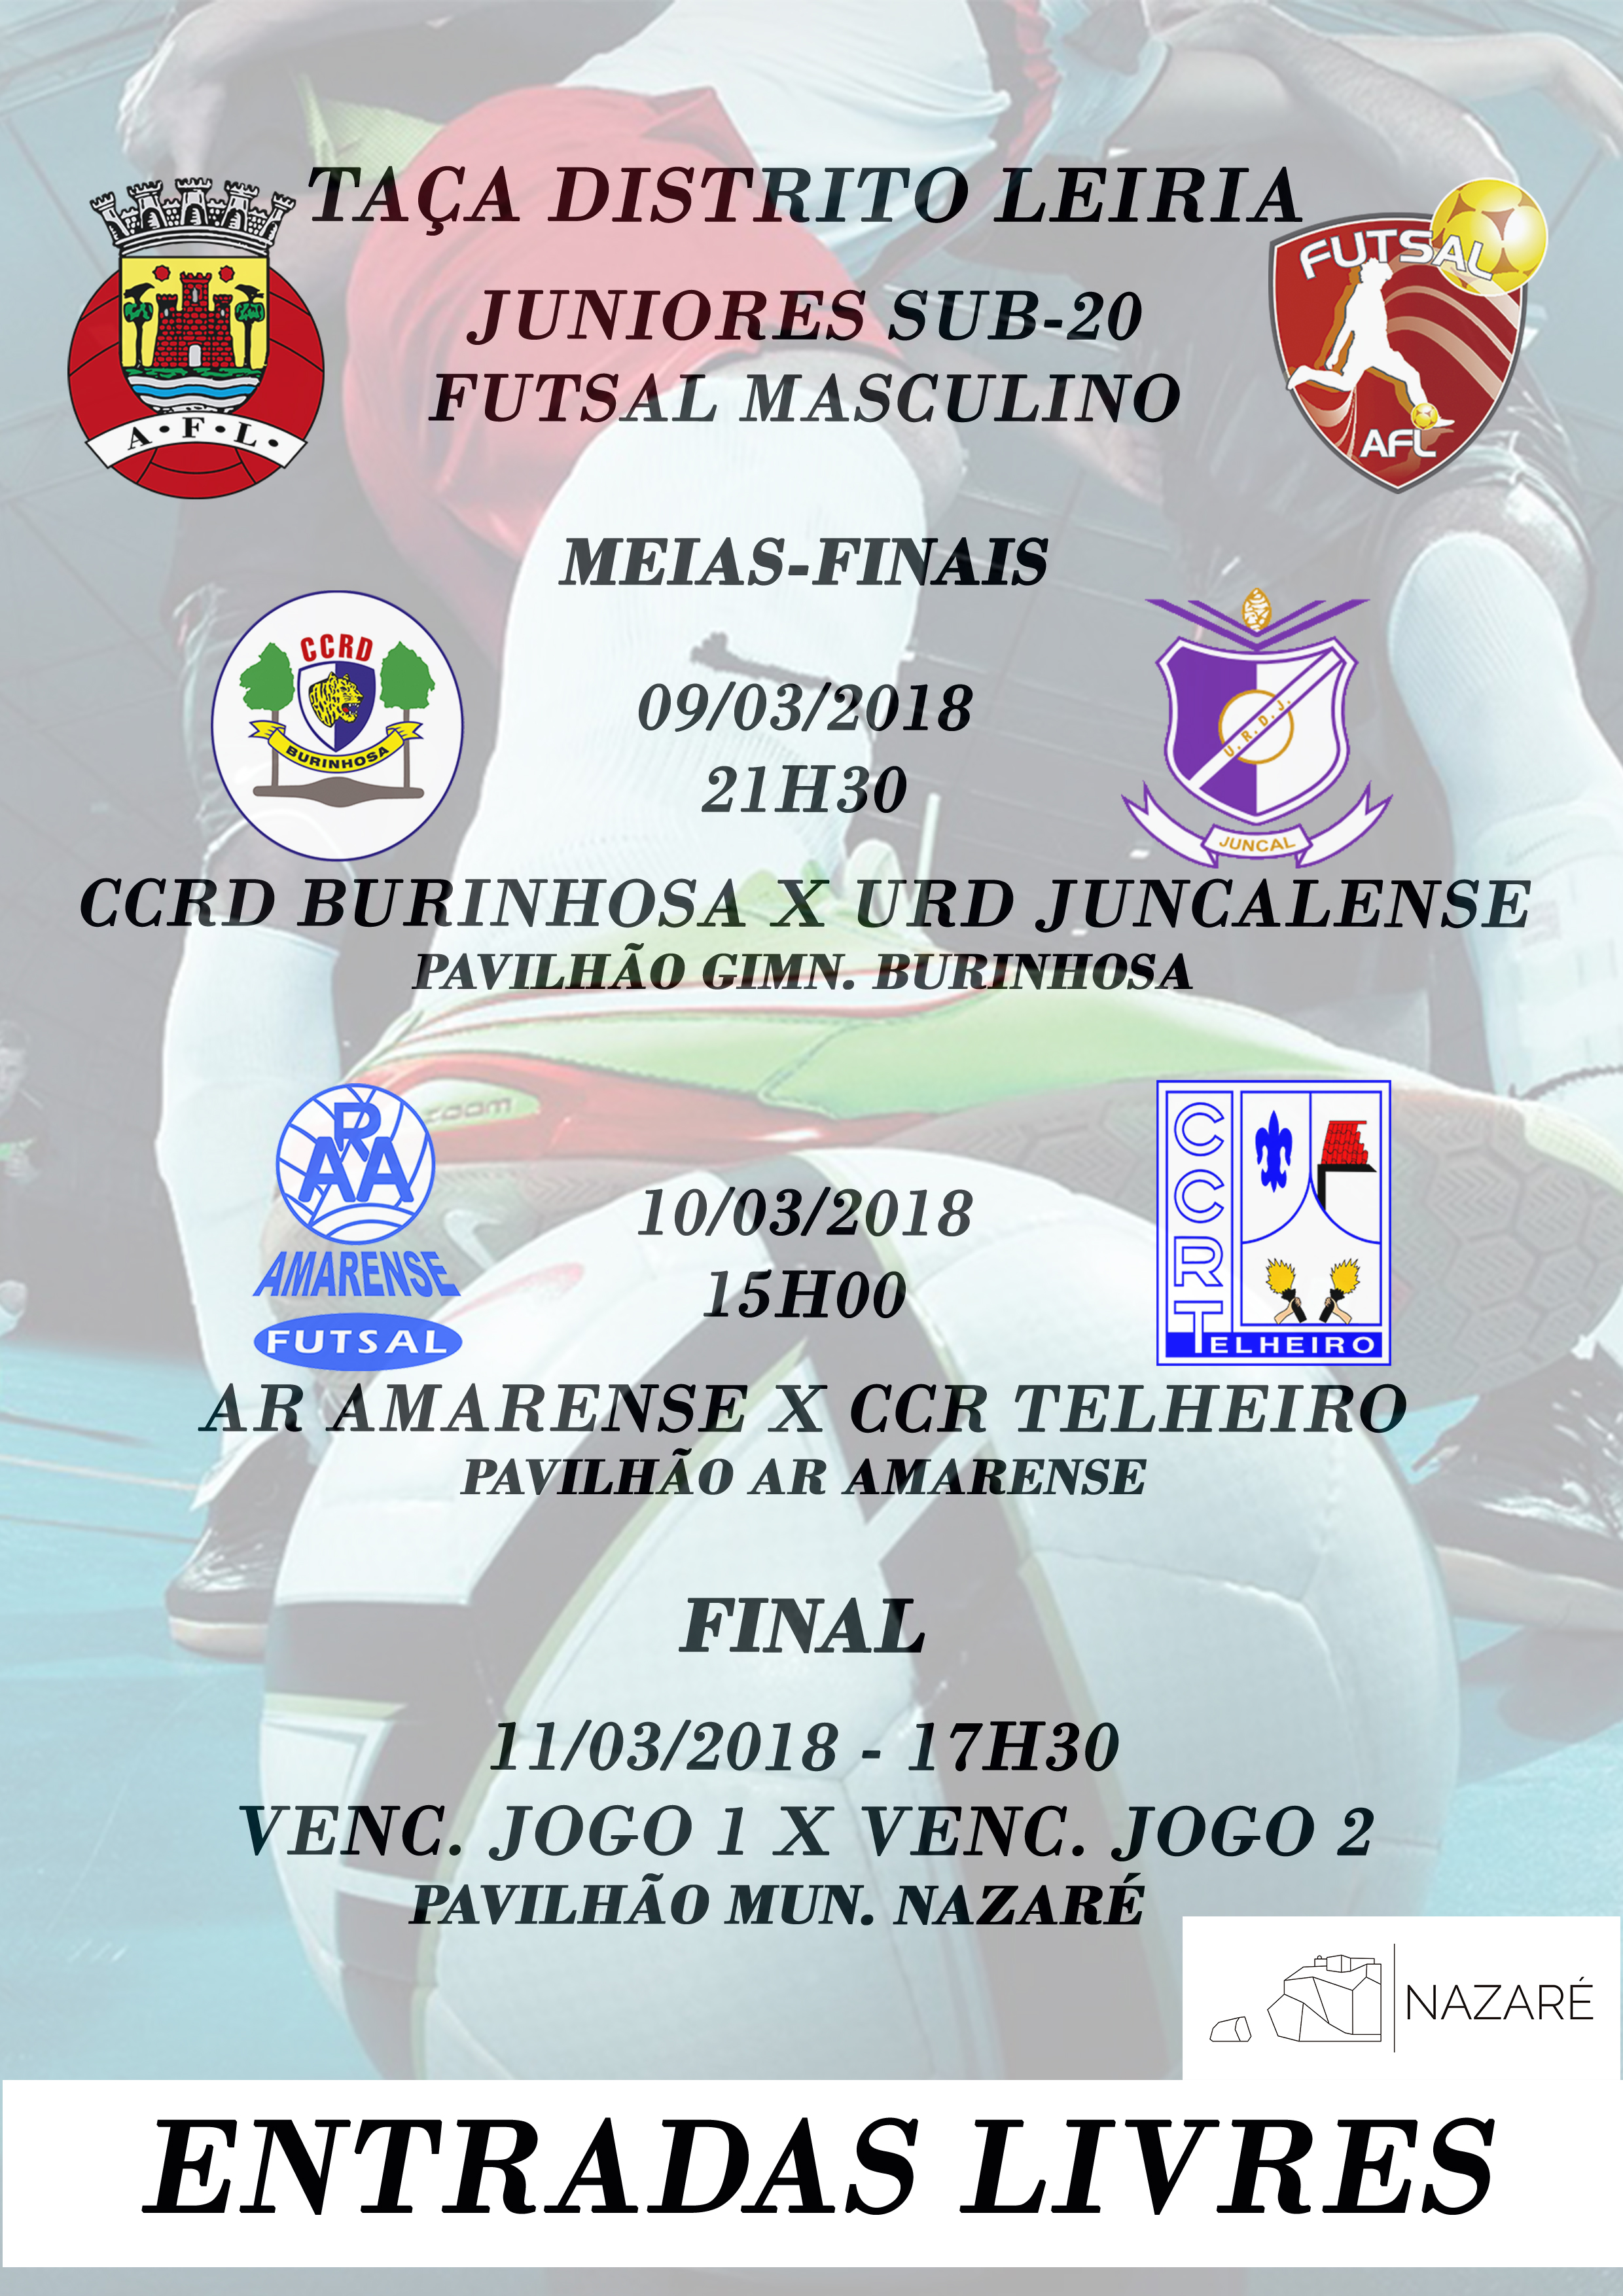 Taça Distrito de Leiria de Juniores Sub-20 Masculinos - Futsal